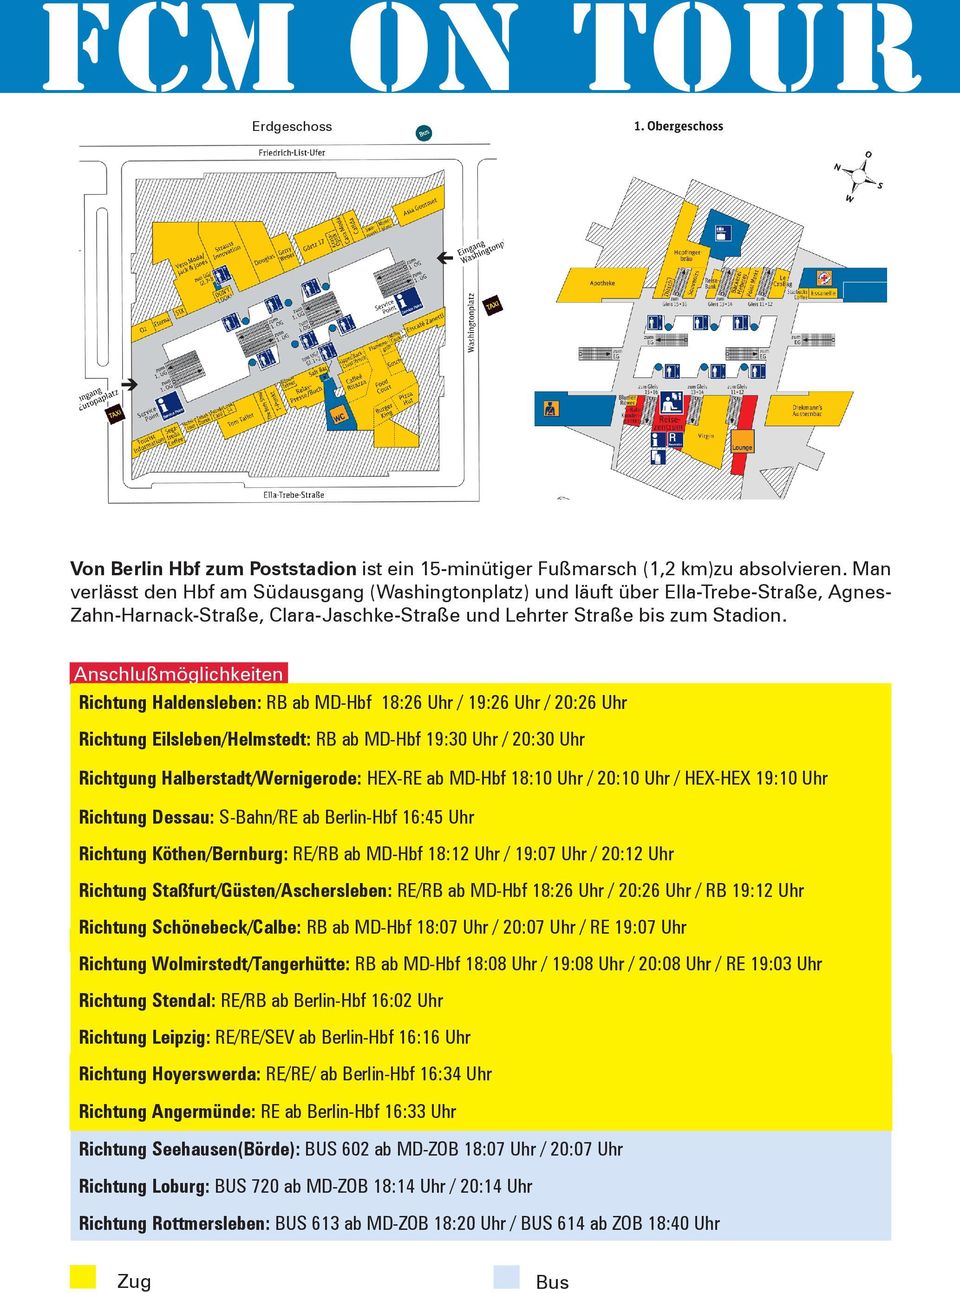 Anschlußmöglichkeiten Richtung Haldensleben: RB ab MD-Hbf 18:26 Uhr / 19:26 Uhr / 20:26 Uhr Richtung Eilsleben/Helmstedt: RB ab MD-Hbf 19:30 Uhr / 20:30 Uhr Richtgung Halberstadt/Wernigerode: HEX-RE